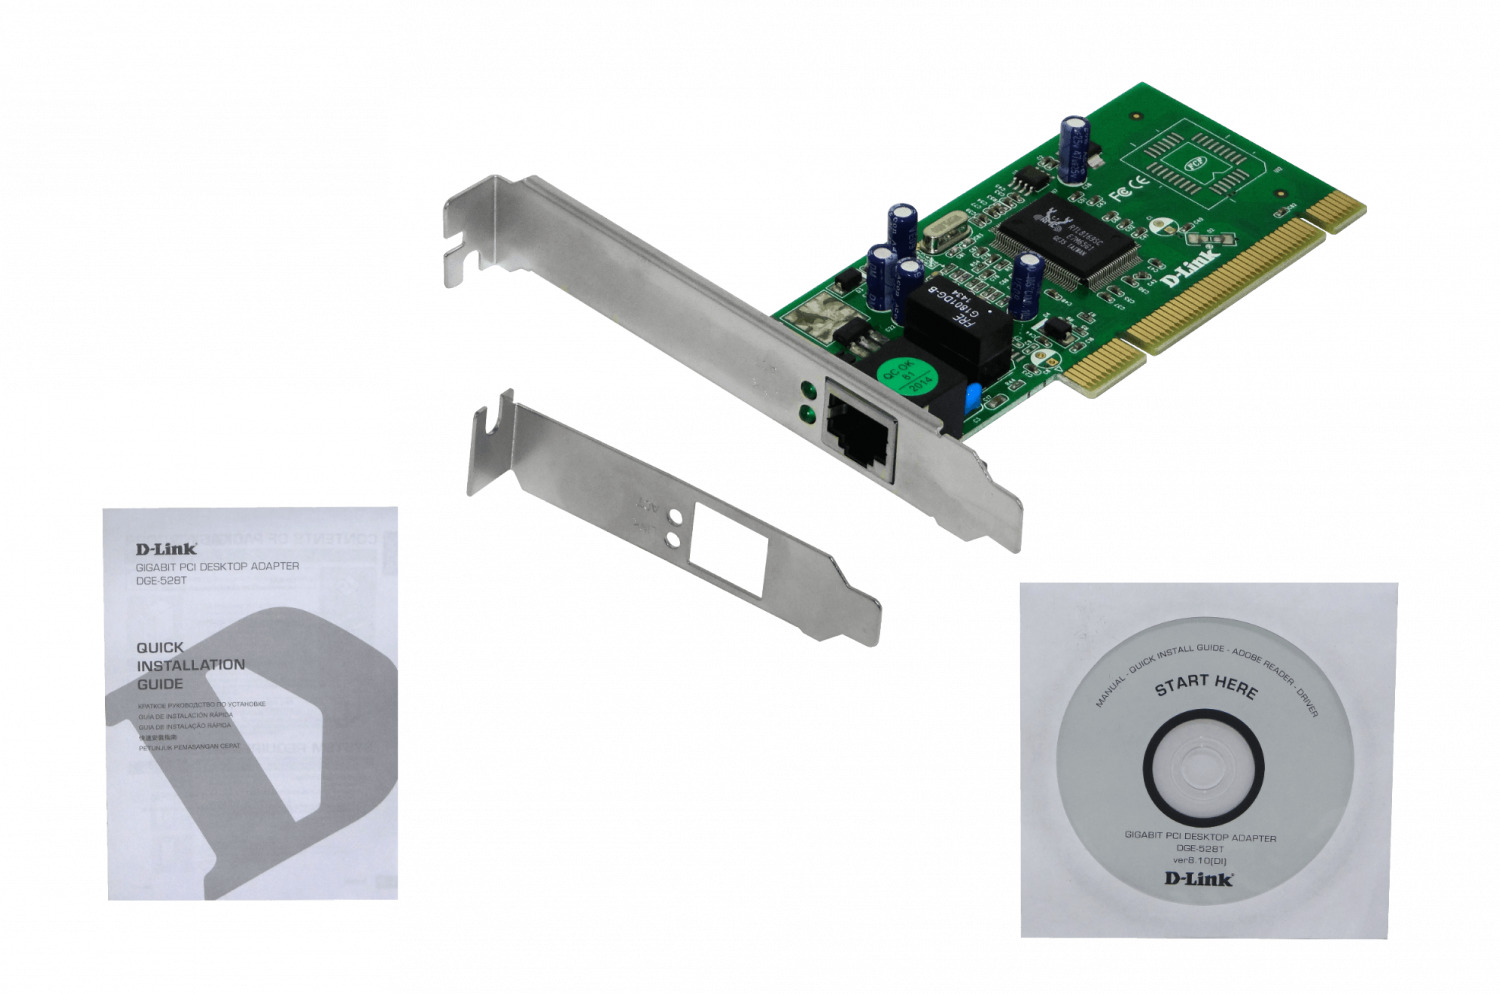 Tarjeta de Red Wifi PCI-Express TL-WN881ND TP-Link  Diartek - Materiales  Eléctricos y Soluciones Tecnológicas